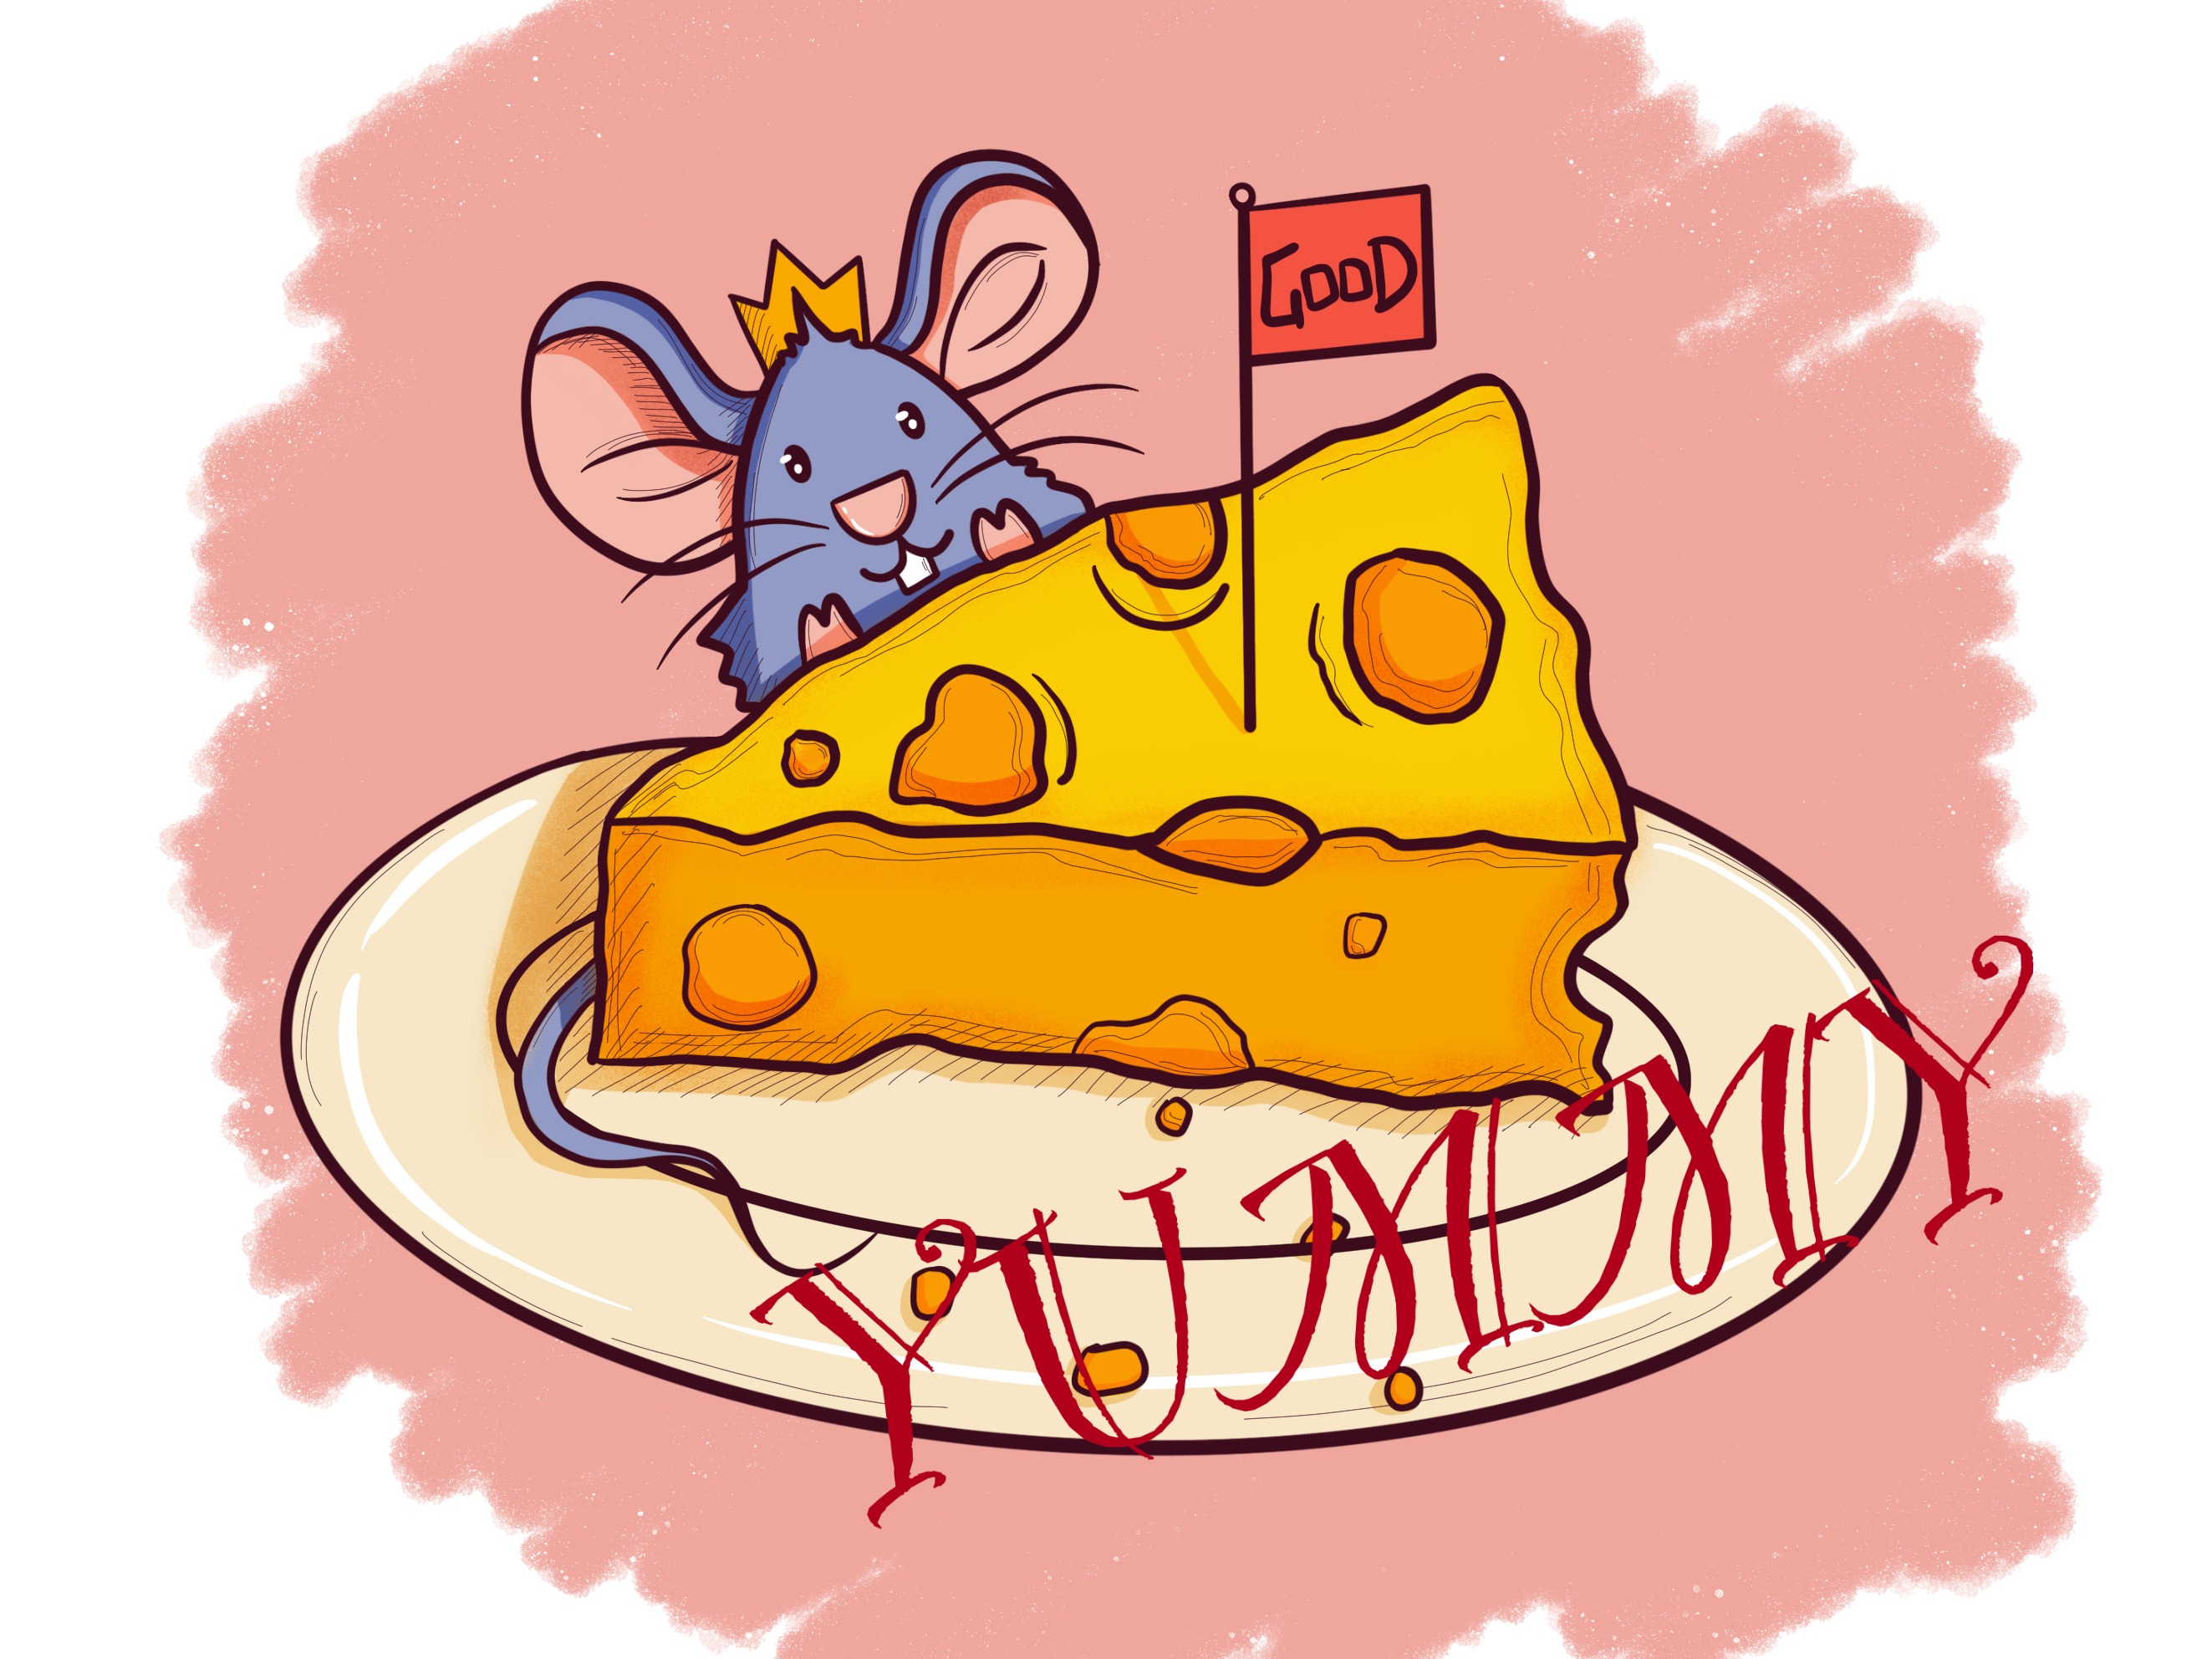 吃乳酪的老鼠 向量例证. 插画 包括有 开会, 图画, 滑稽, 唯一, 微笑, 鼠标, 字符, 食物, 心情 - 33098905